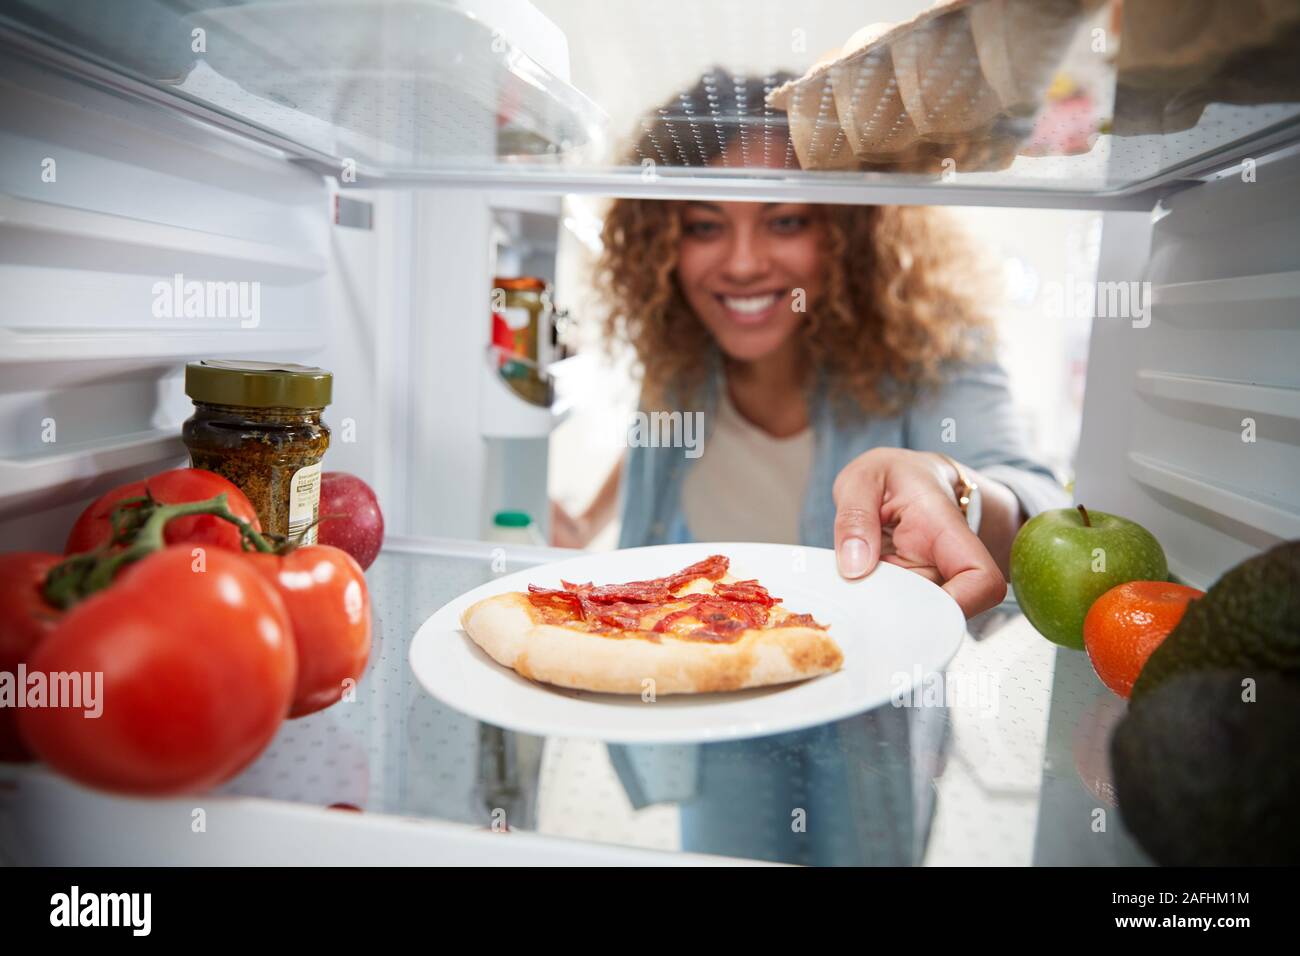 Vista desde el interior de la nevera como la mujer abre la puerta para el sector oficial Pizza sobrantes Foto de stock